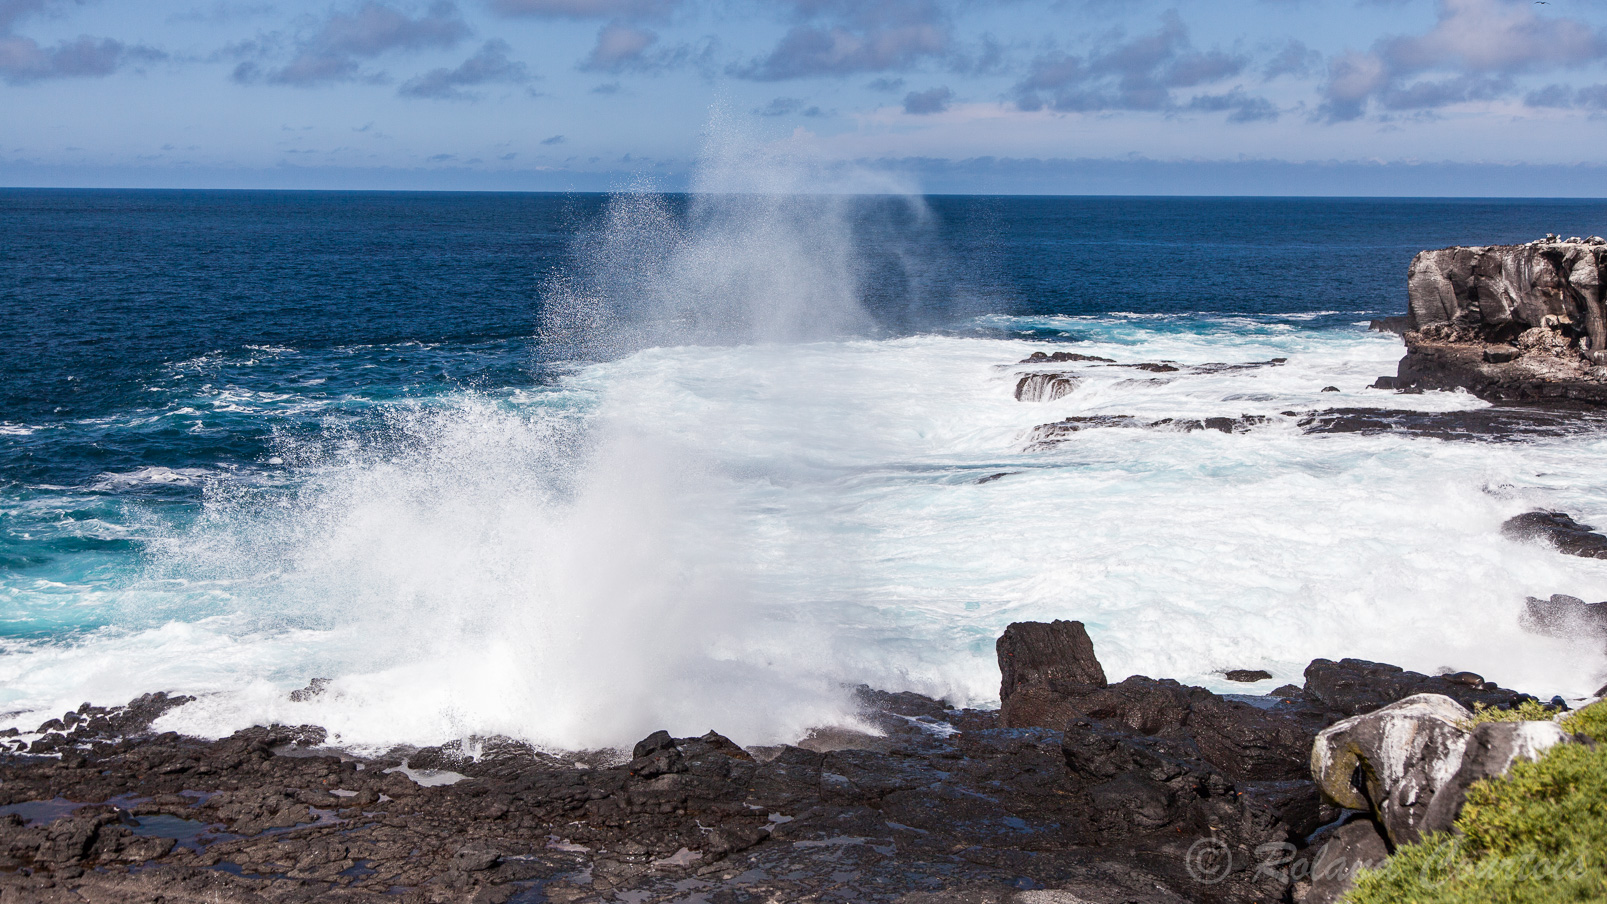 "Le trou souffleur" sur la côte basaltique de l'île Española. L'eau de mer est infiltrée violemment sous la couche de lave, puis éjectée par des fissures et vaporisée brutalement à une hauteur de 25m.